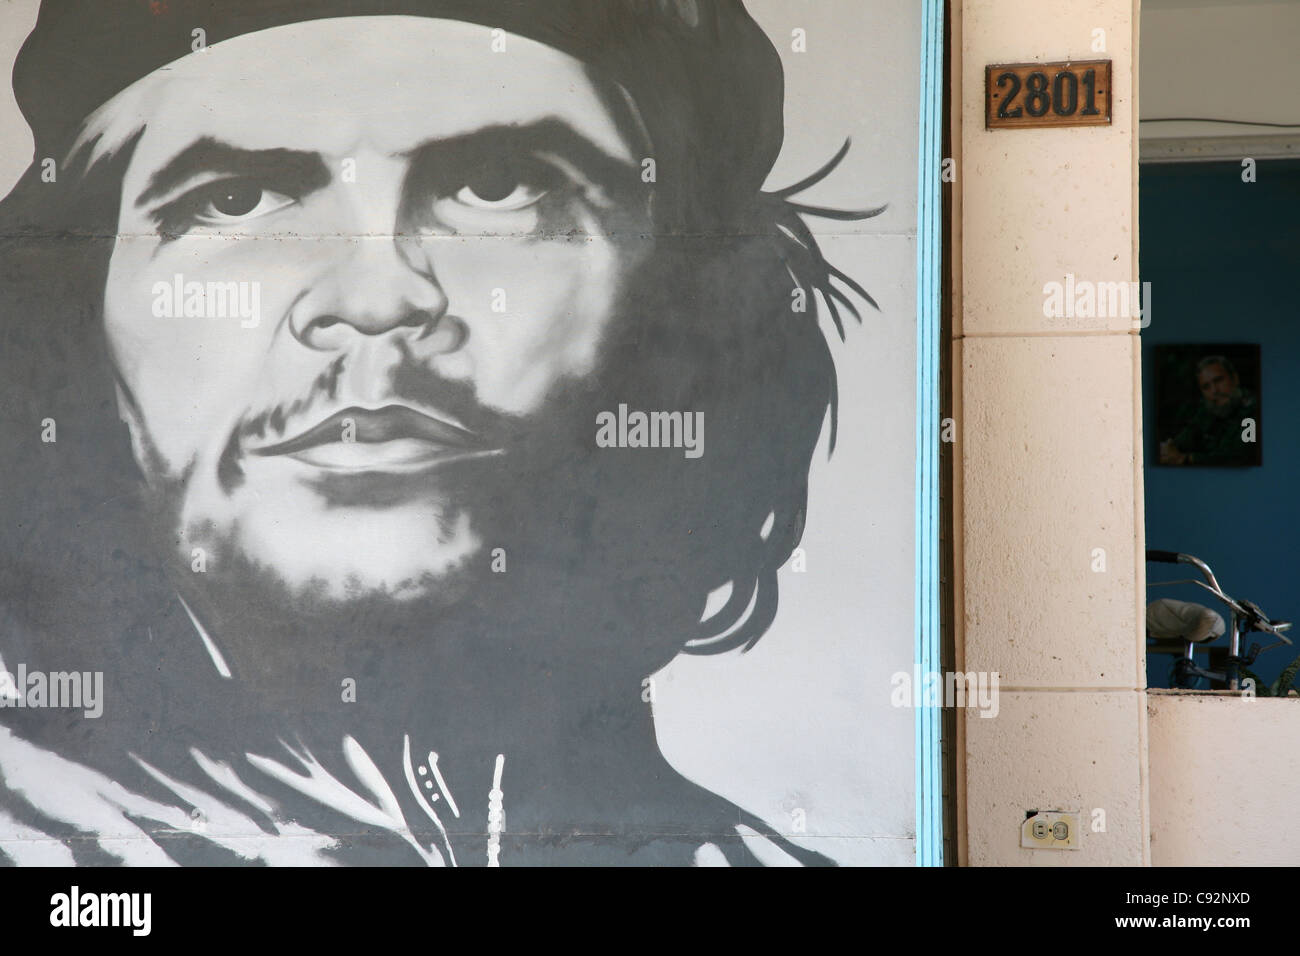 Porträts von Ernesto Che Guevara und Fidel Castro in einem administrativen Gebäude im Ort Varadero, Kuba. Stockfoto